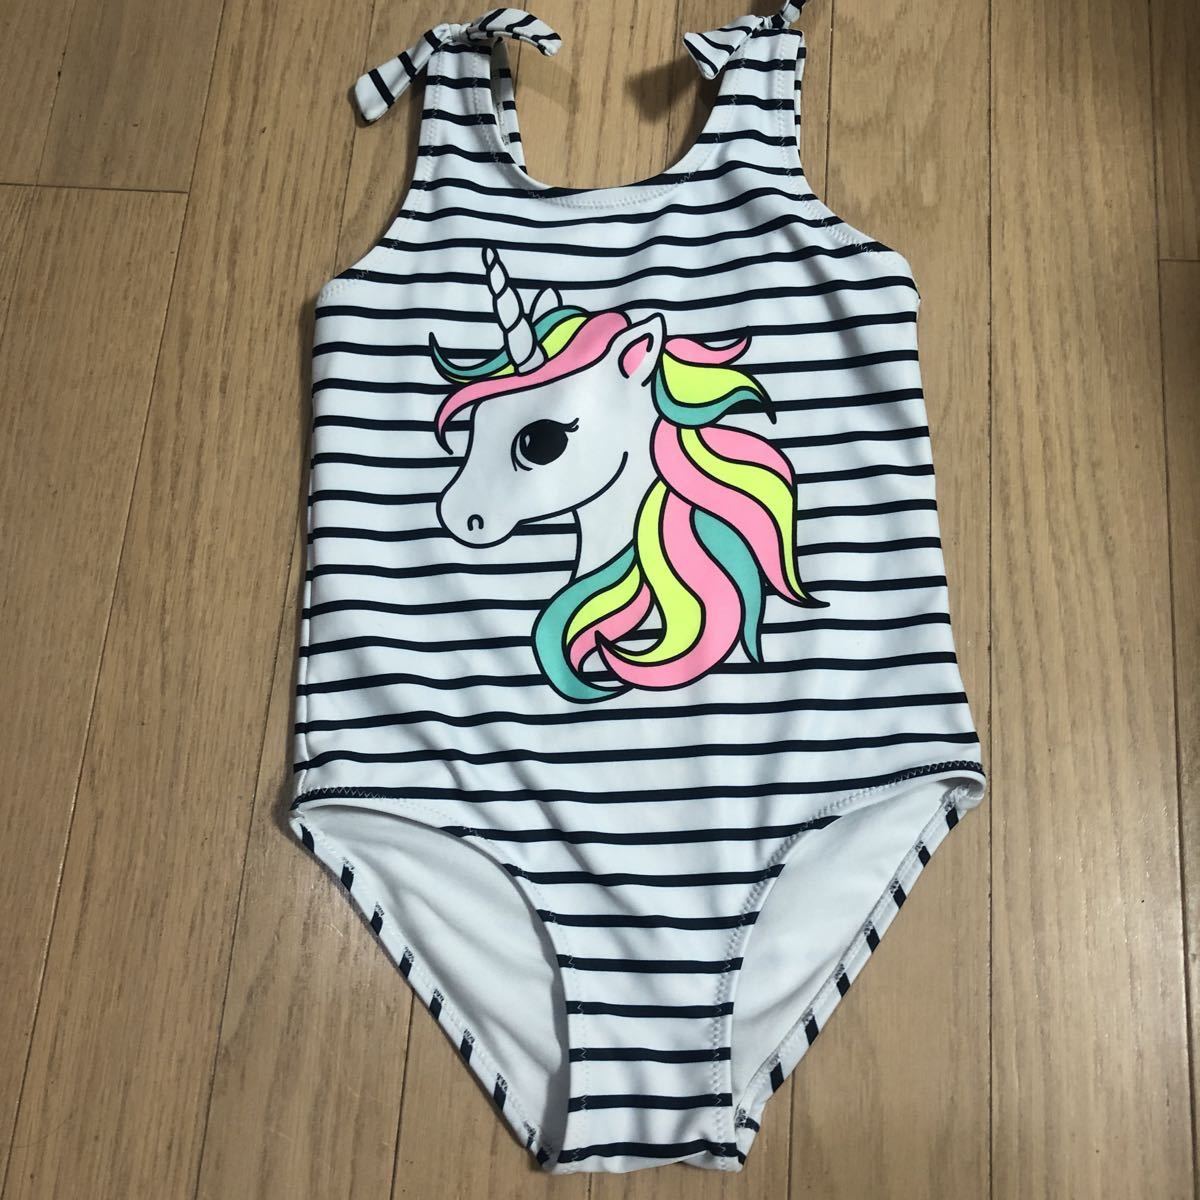  One-piece купальный костюм 110 размер Unicorn 